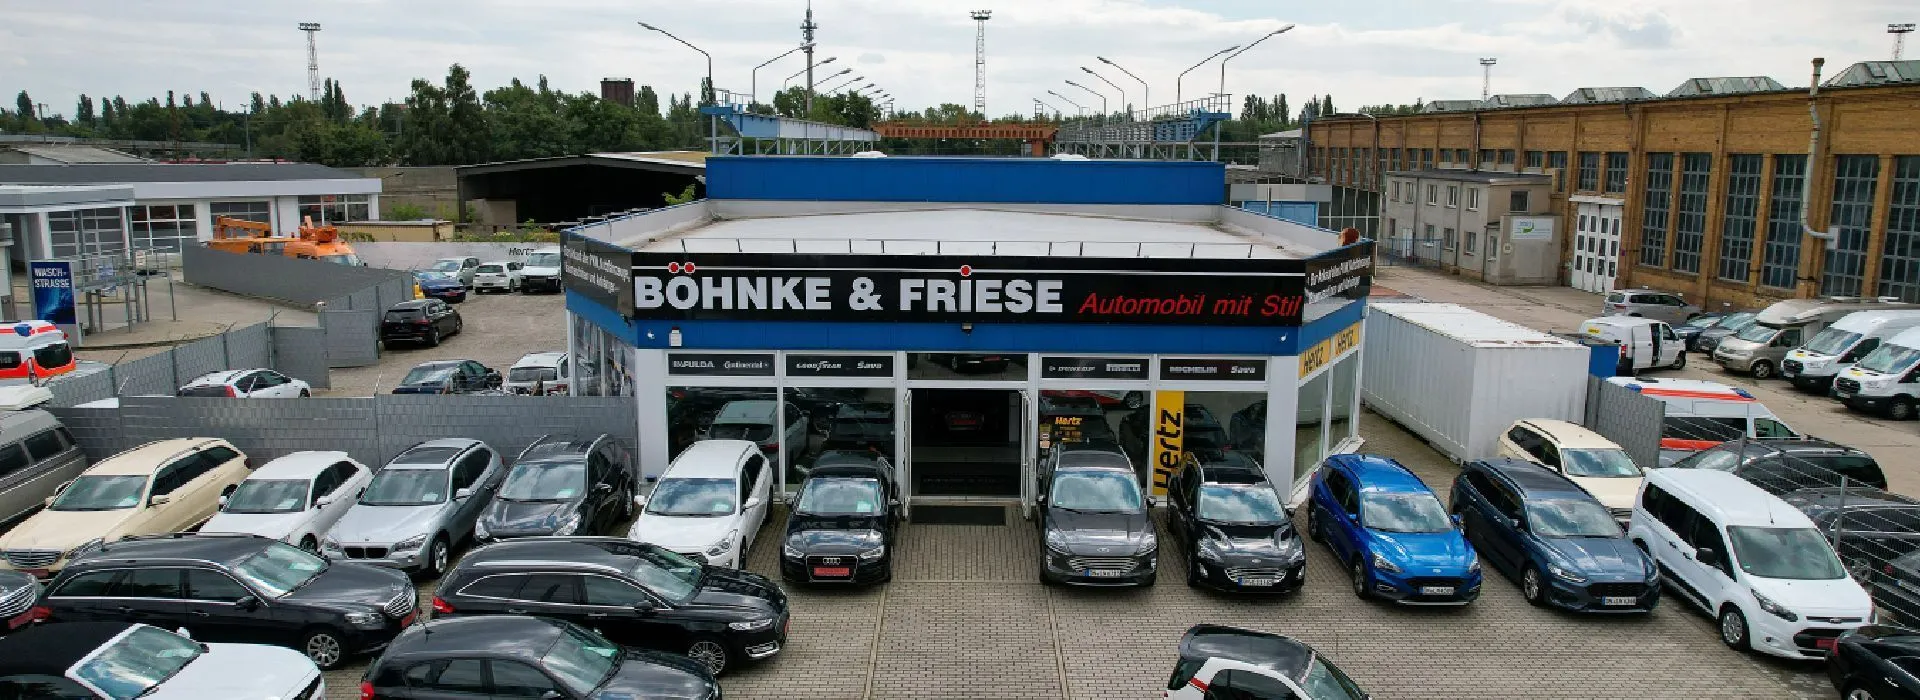 Auto verkaufen in Leipzig